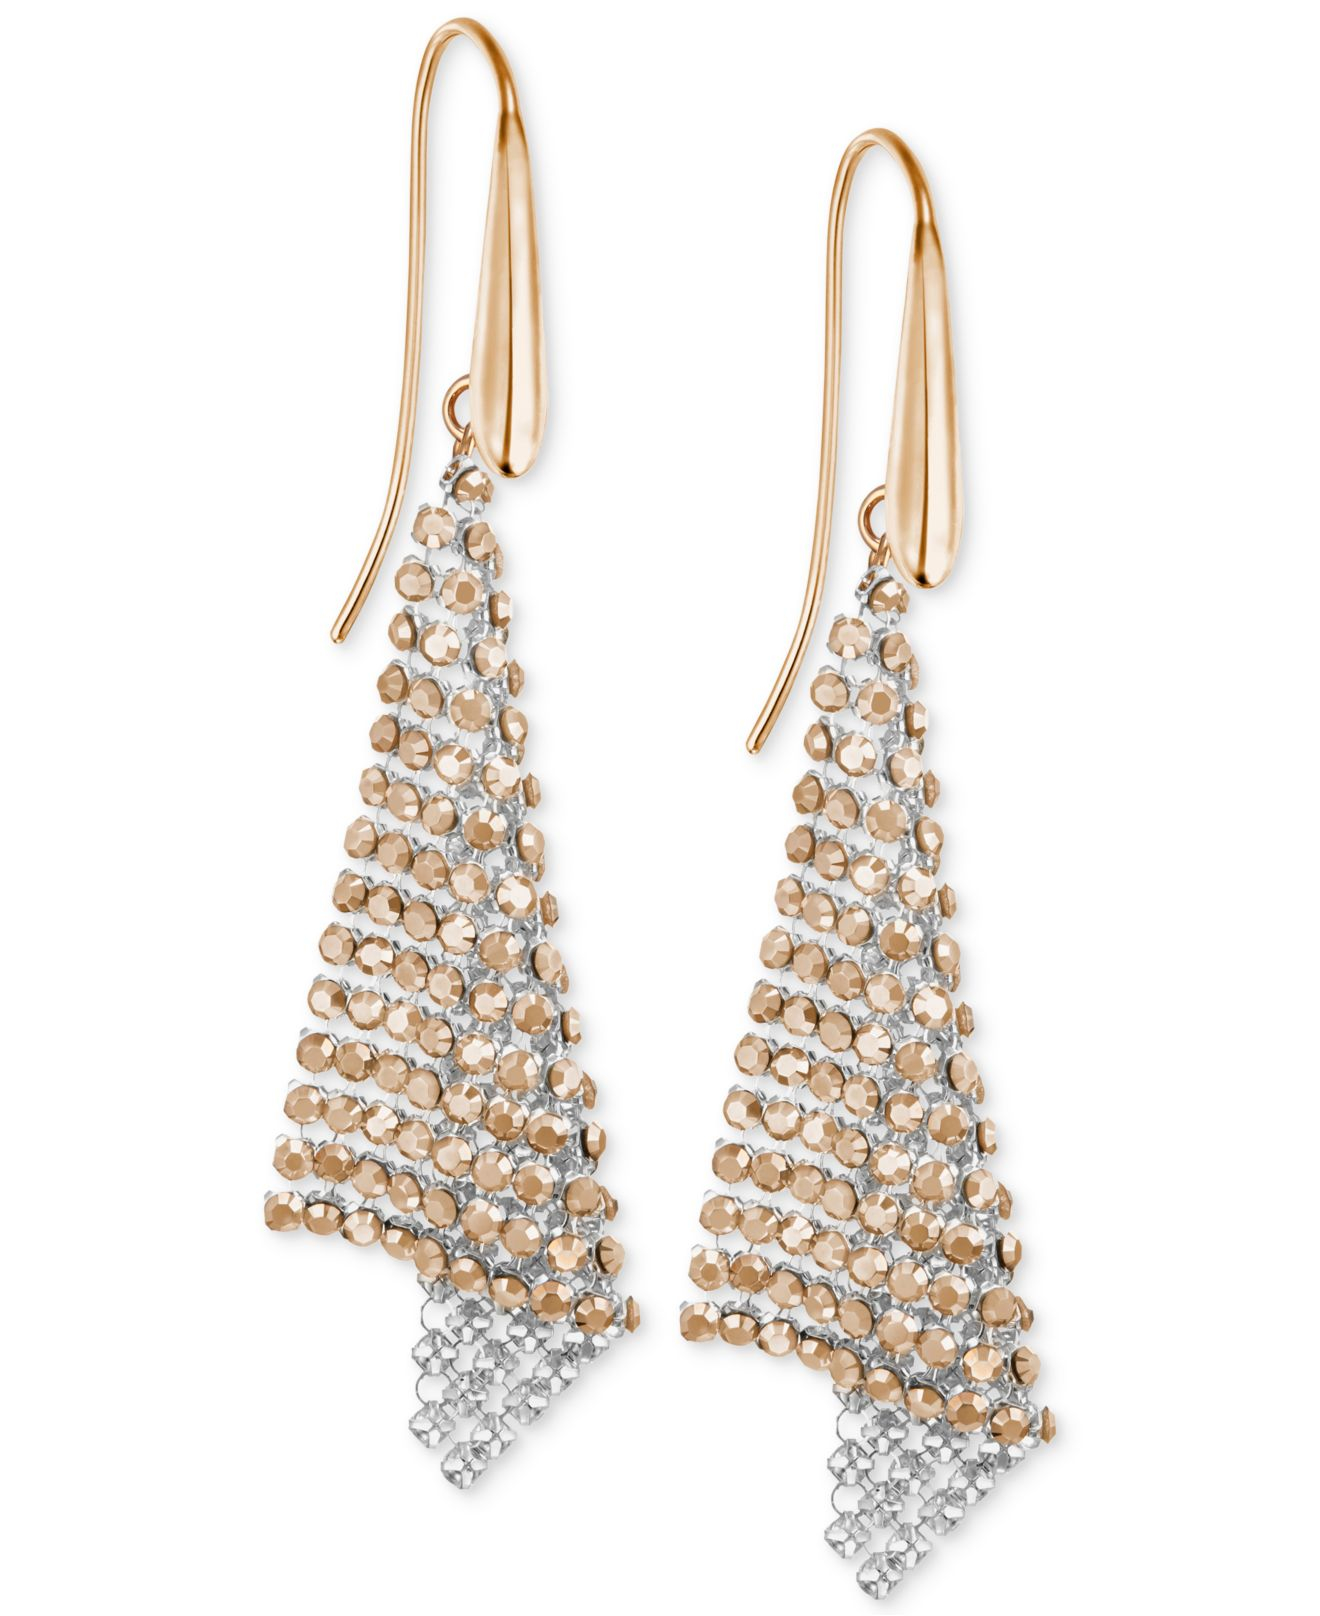 Gold And Crystal Drop Earrings Online - renuvidyamandir.in 1693357994